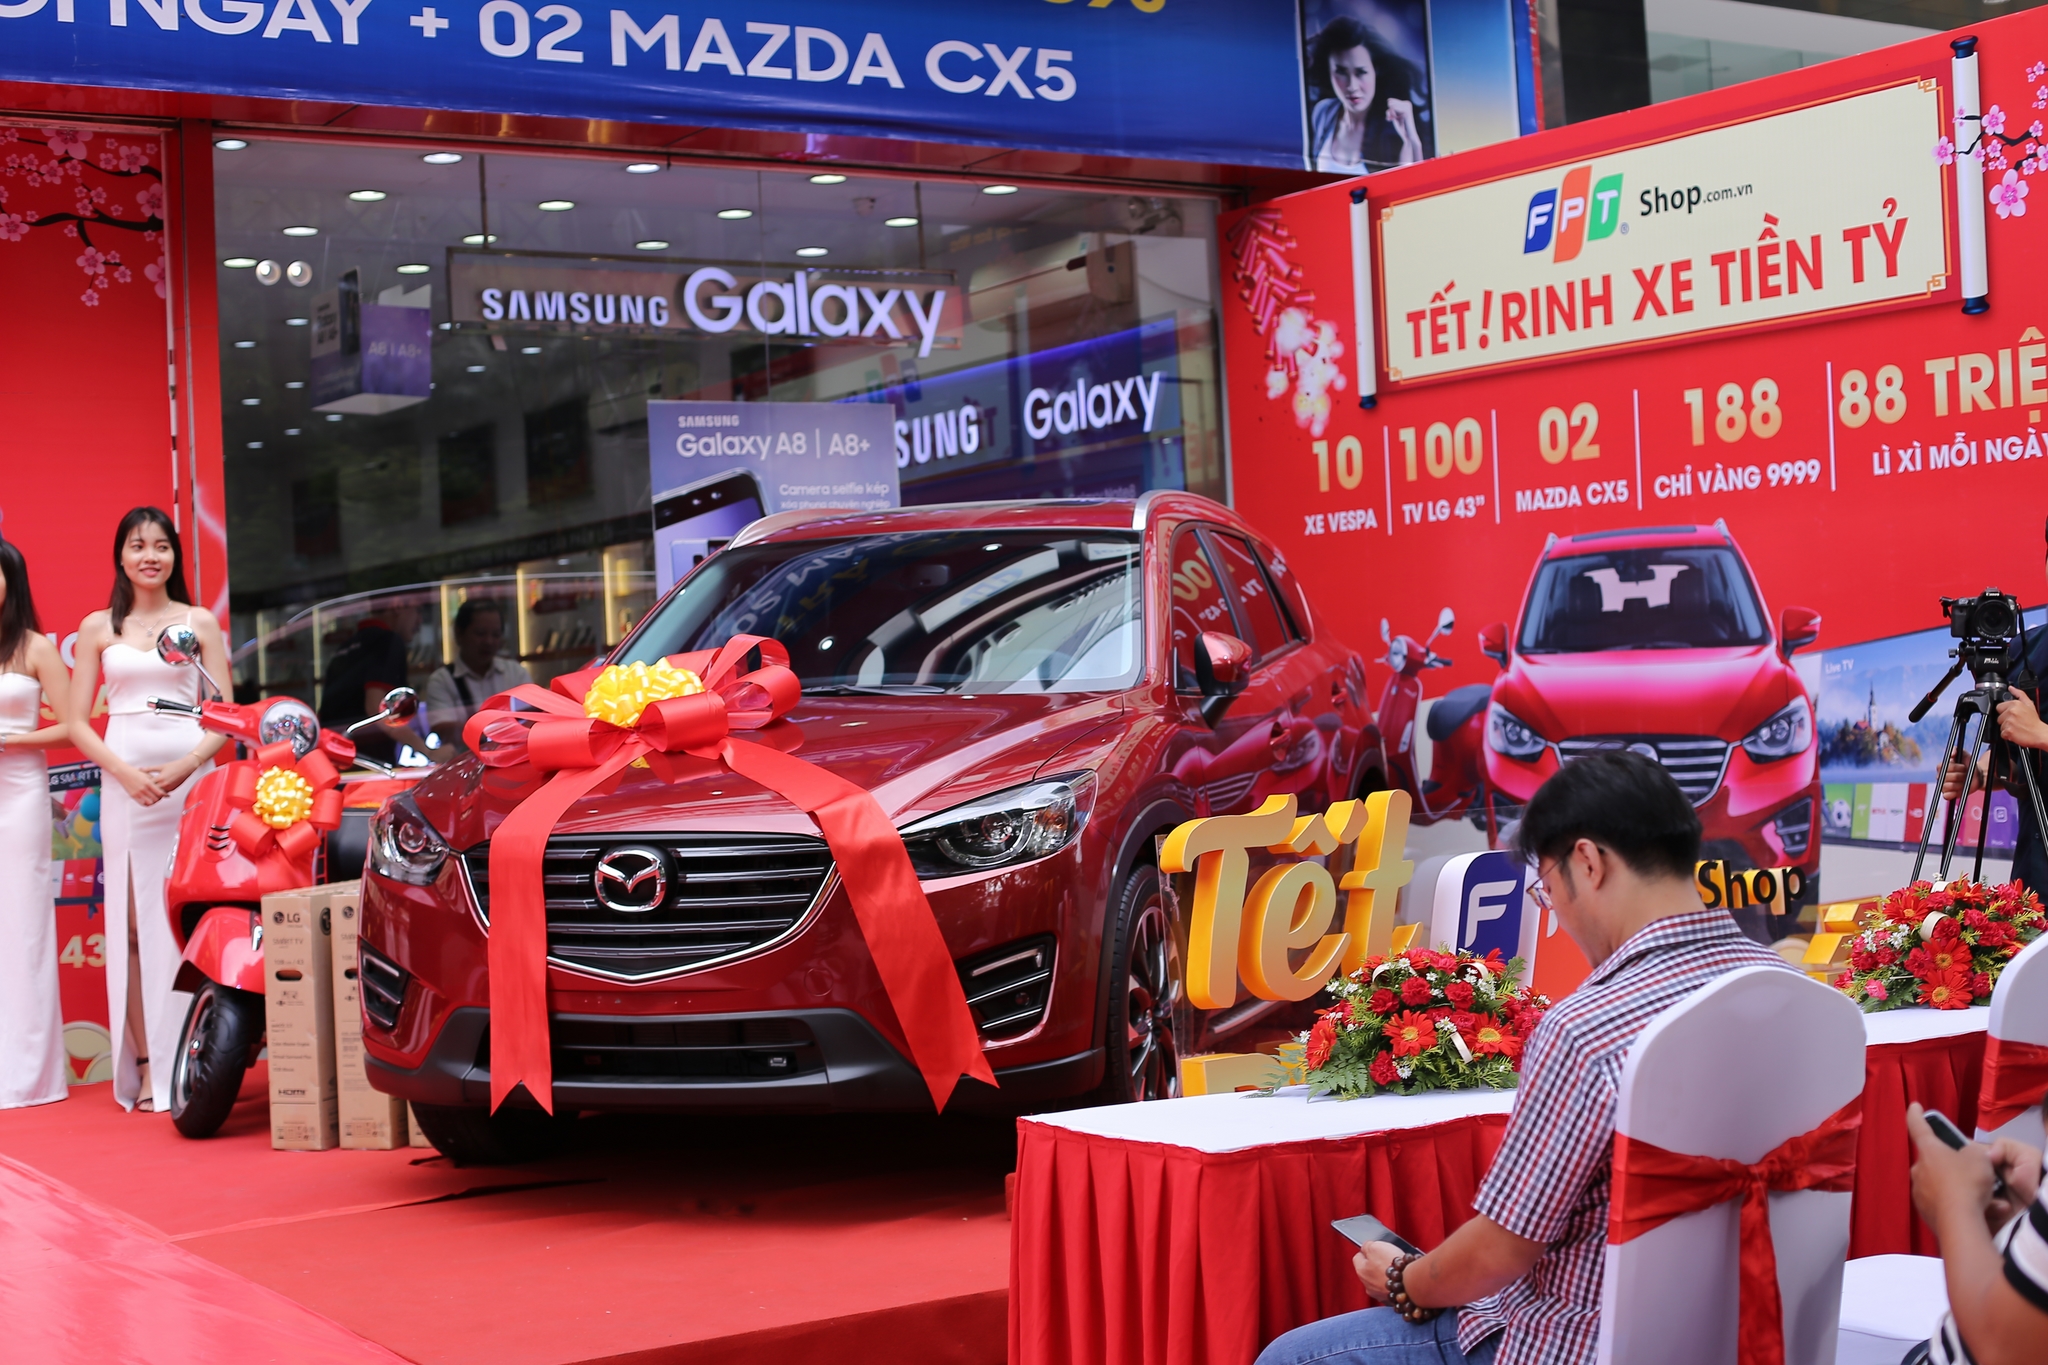 FPT Shop trao chiếc Mazda CX5 đầu tiên cho khách hàng may mắn trong chương trình “Tết FPT Shop – Rinh xe tiền tỷ”